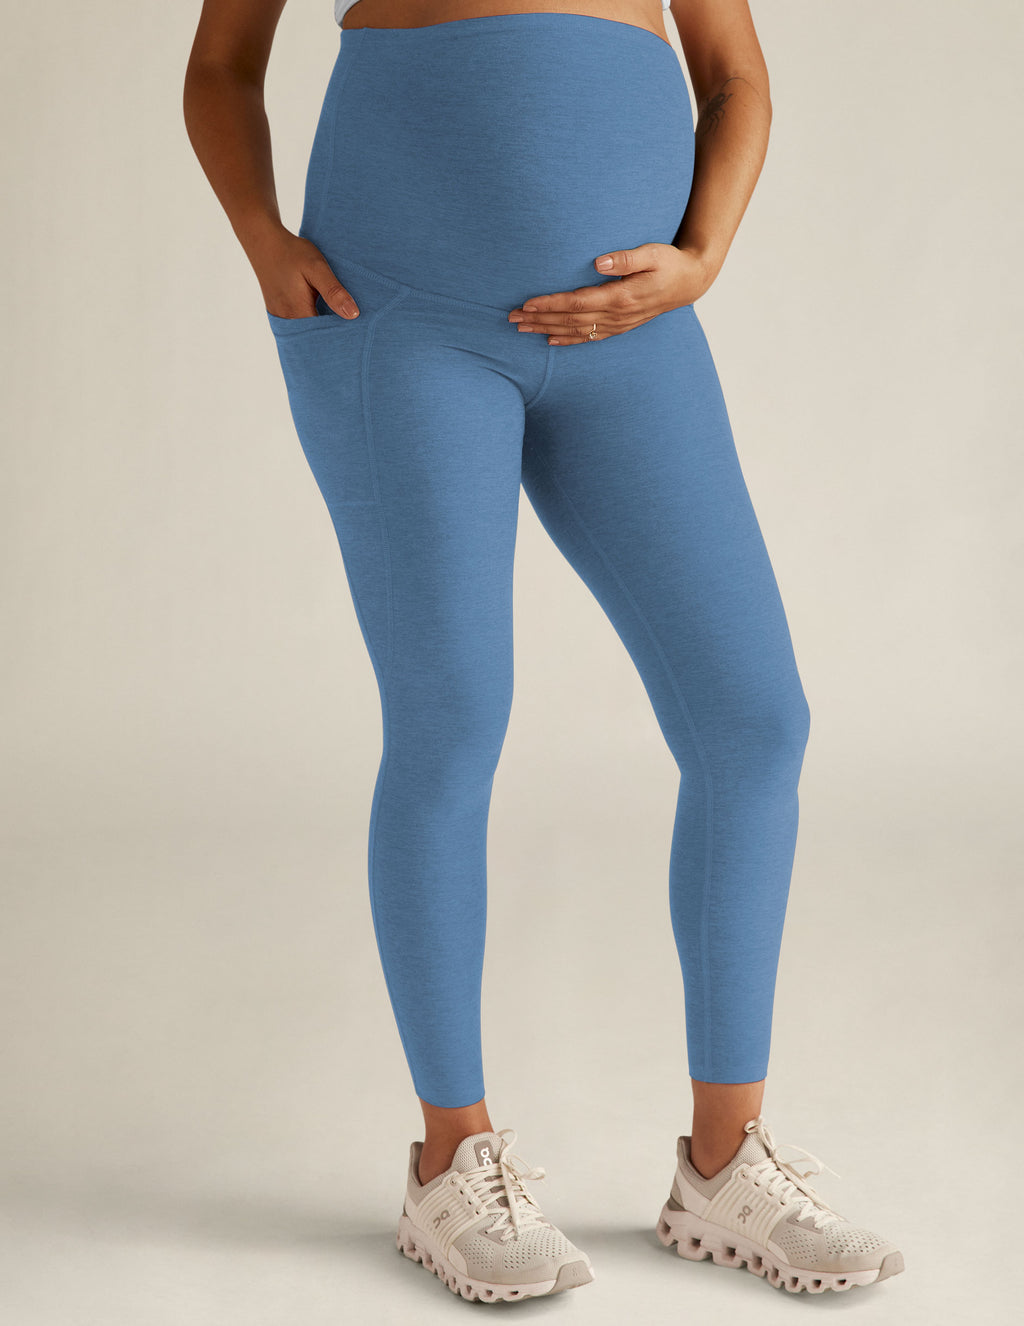 VBARHMQRT Flare Yoga Pants Tall Maternity Print Tights Leggings Control  Yoga Sport Leggings High Waisted Leggings Workout Leggings for Women Tummy